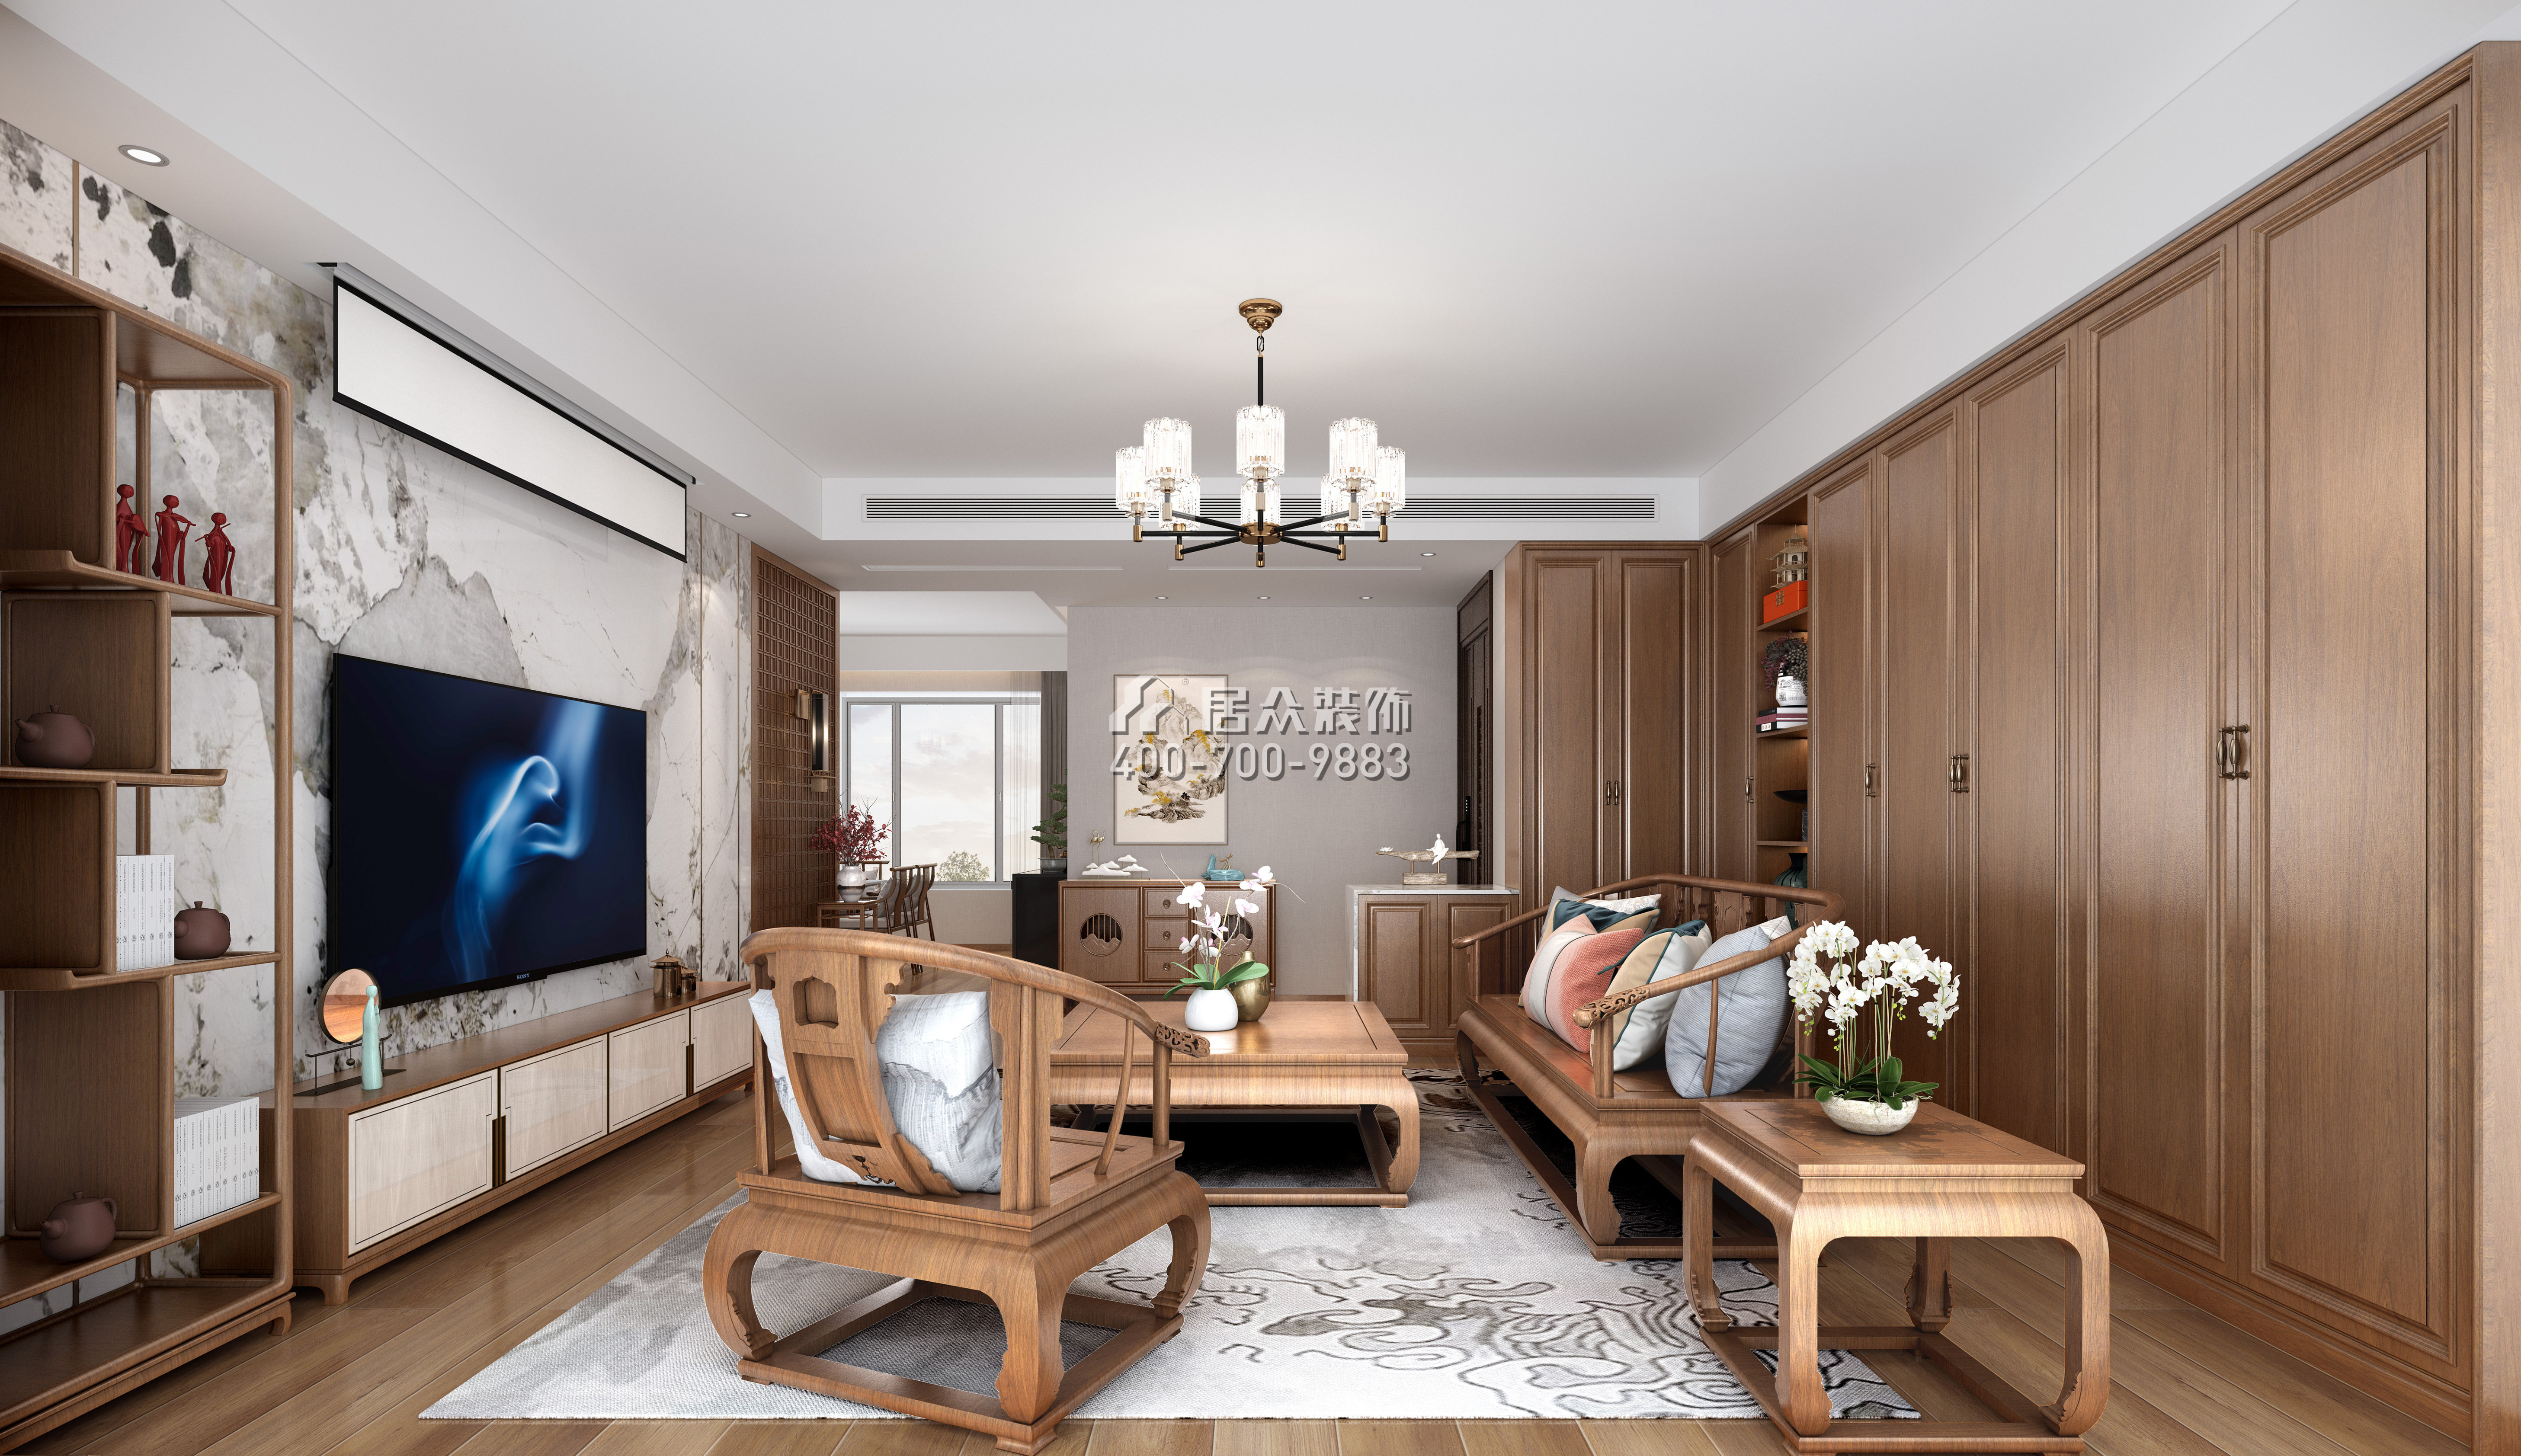 新天国际名苑150平方米中式风格平层户型客厅装修效果图